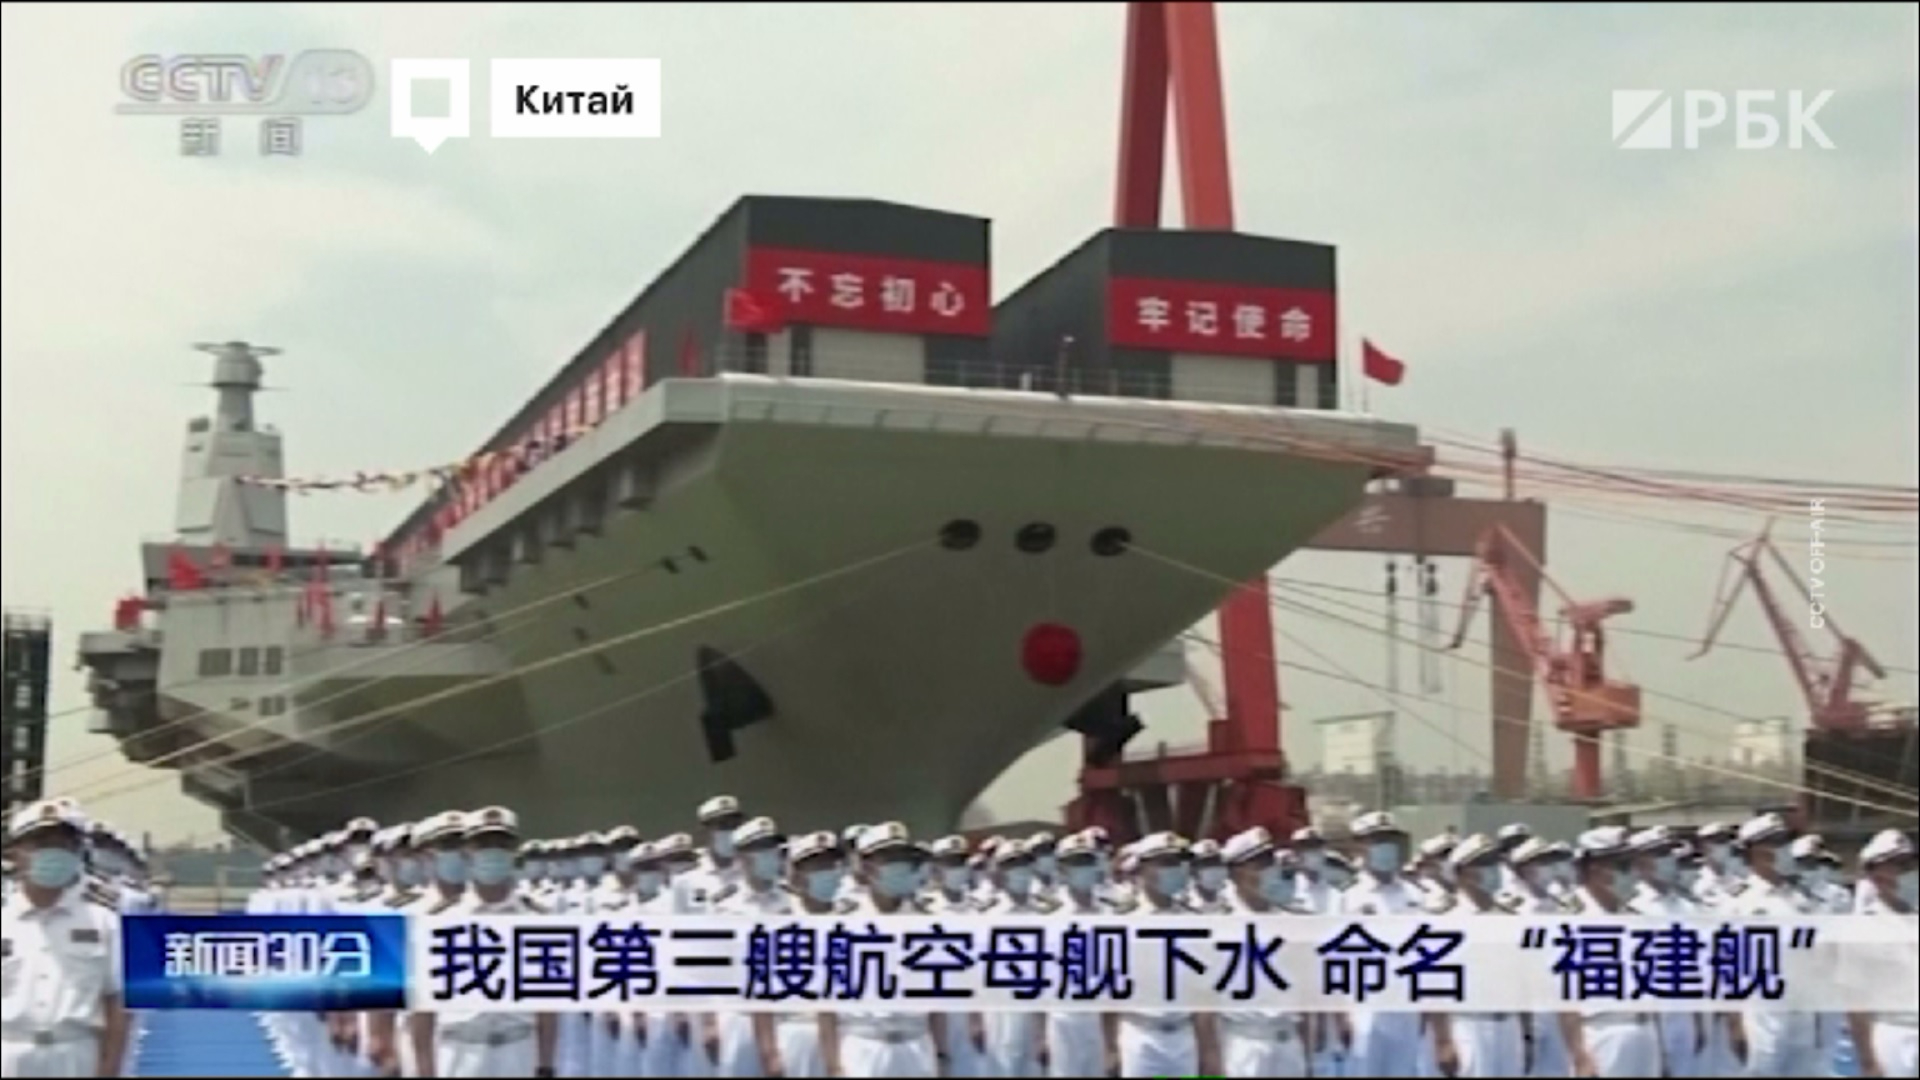 Китай спустил на воду первый авианосец «Фуцзянь» собственной разработки